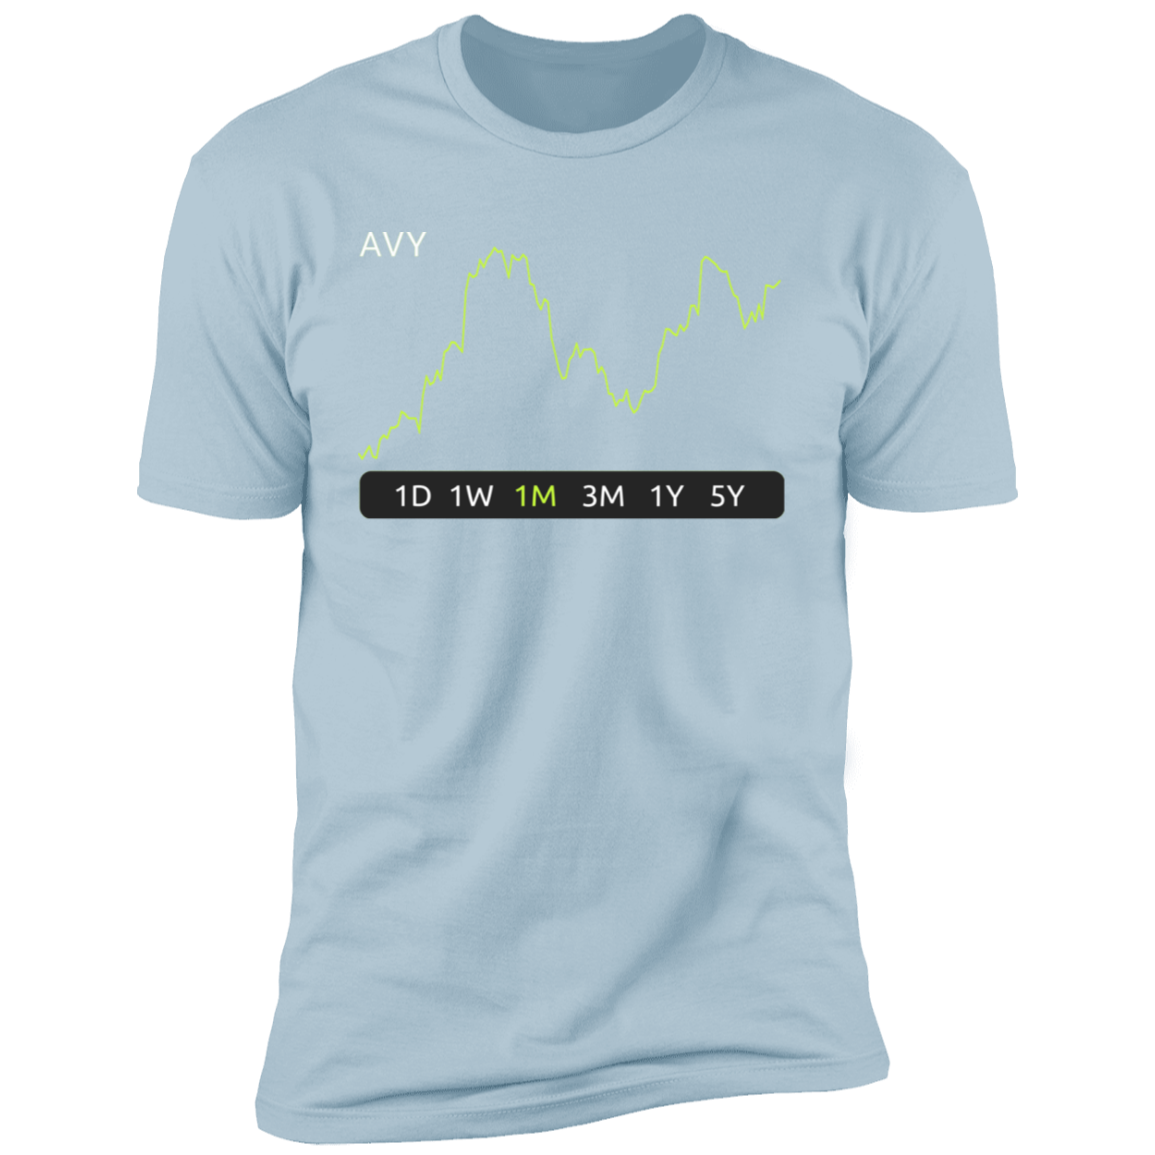 AVY Stock 1m Premium T-Shirt